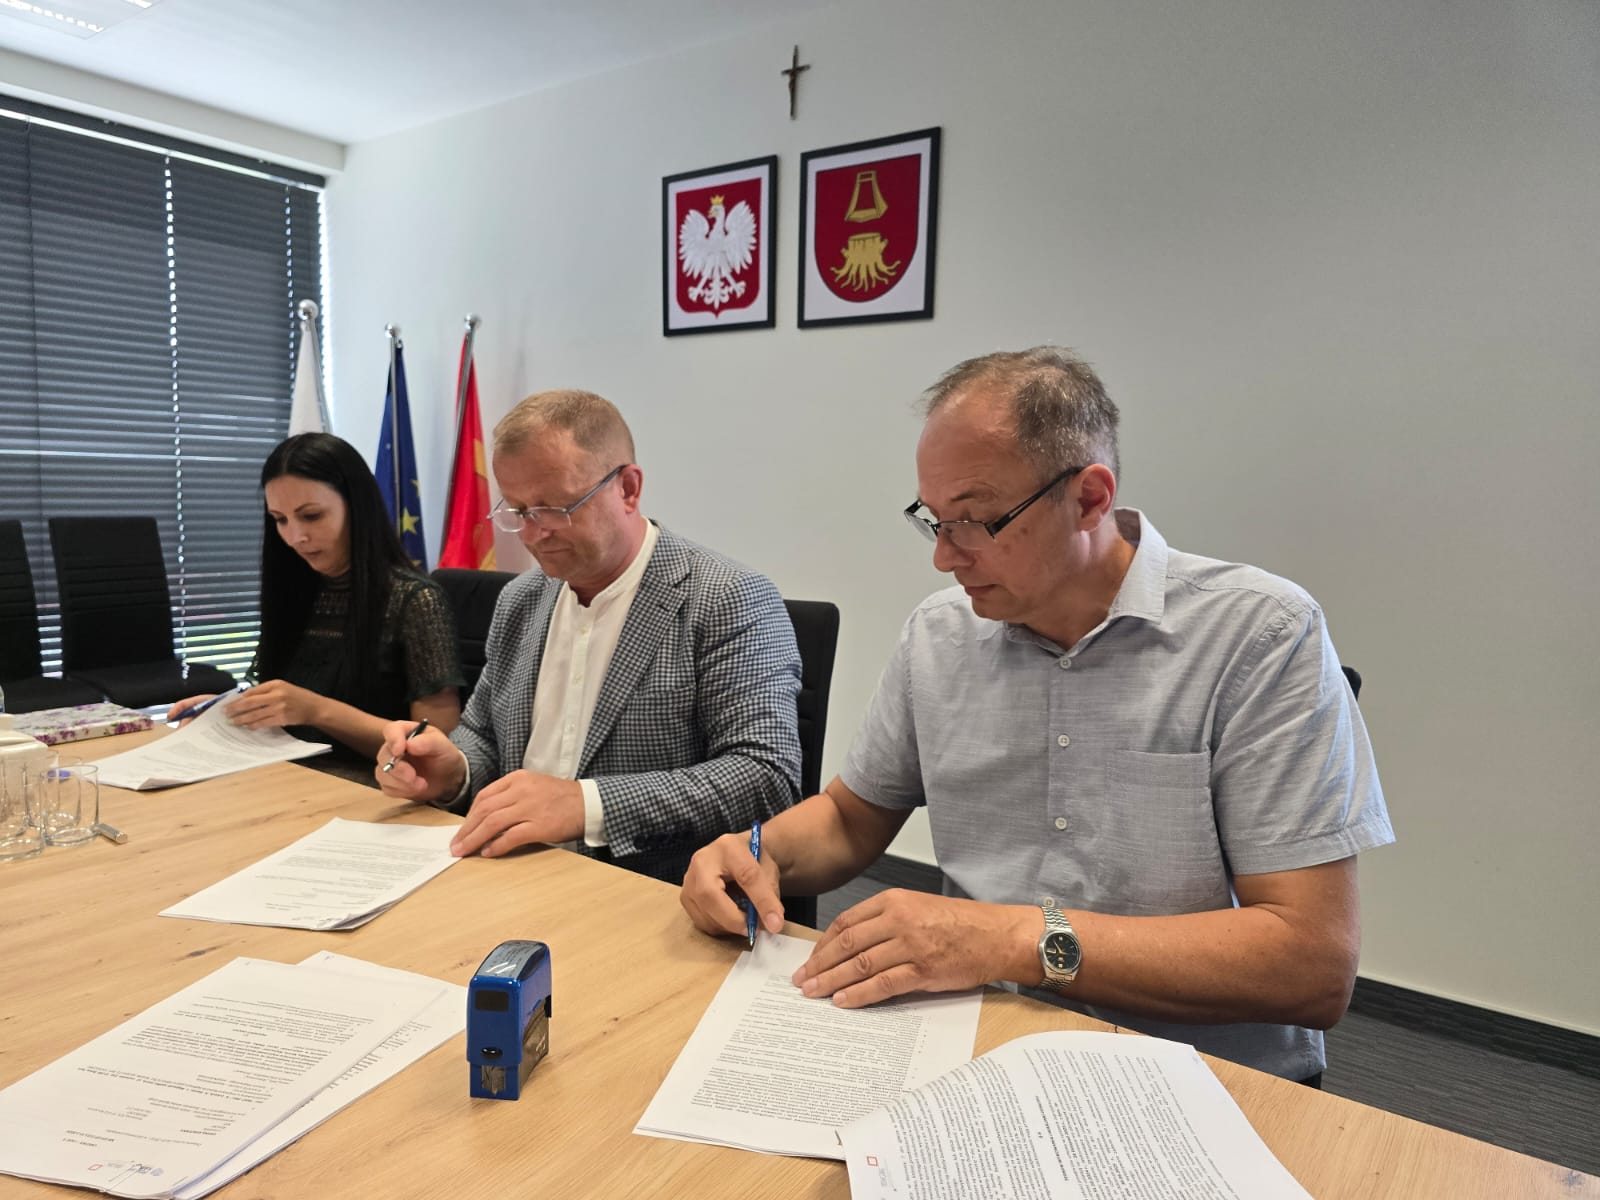 Podpisano umowę na budowę kanalizacji w Łęce, Koniuszowej i Lipnicy Wielkiej